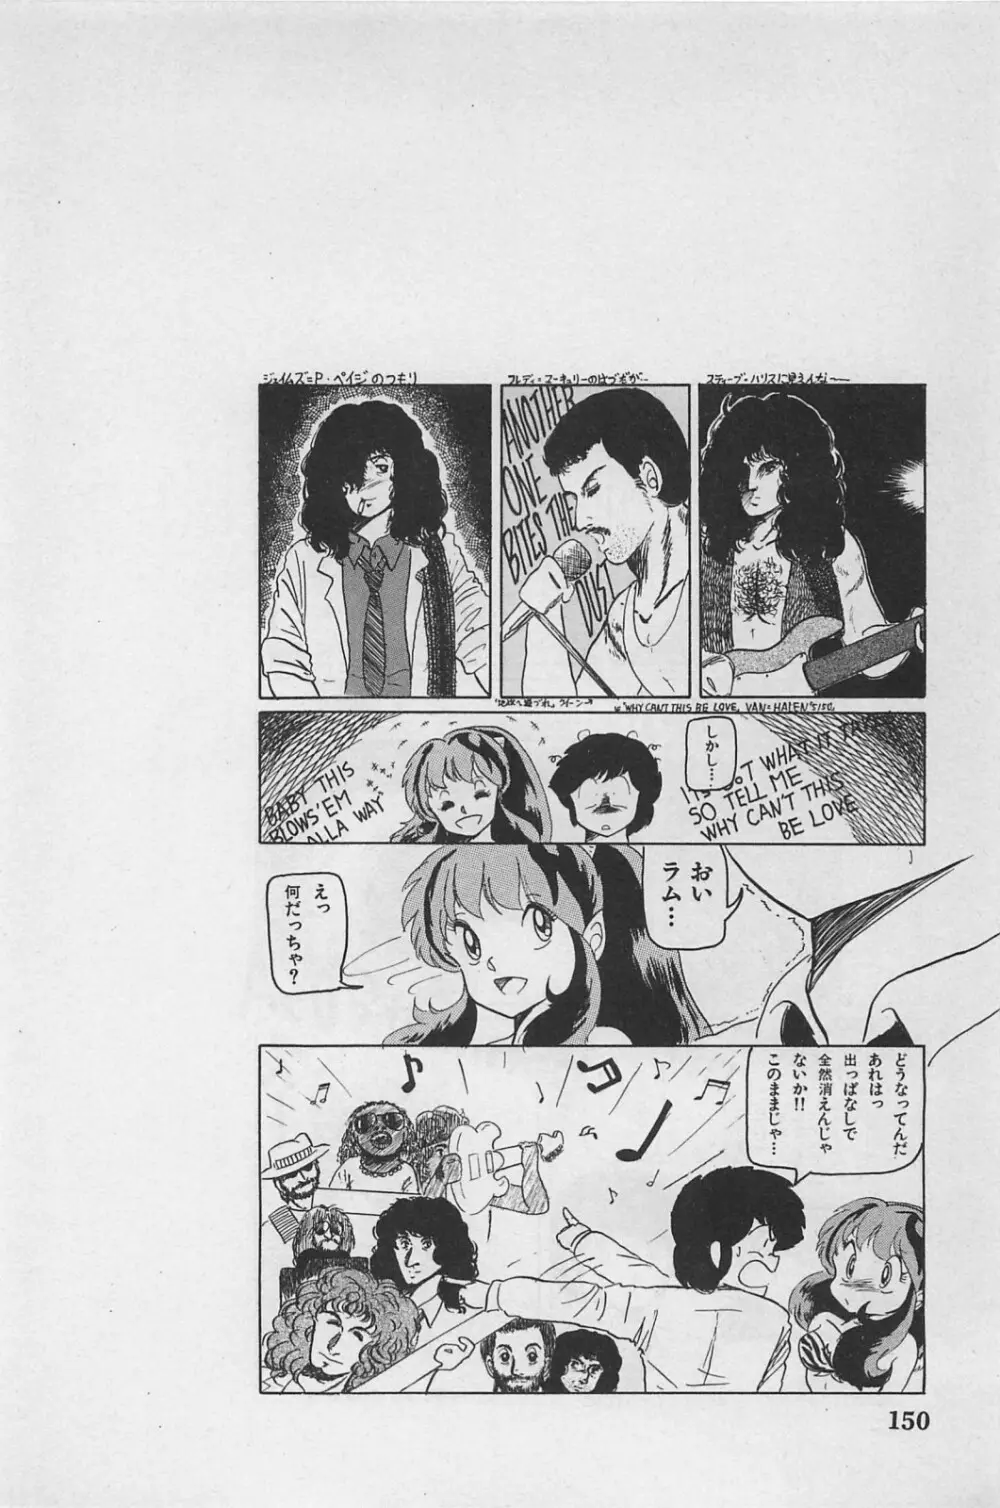 美少女症候群 1985 152ページ